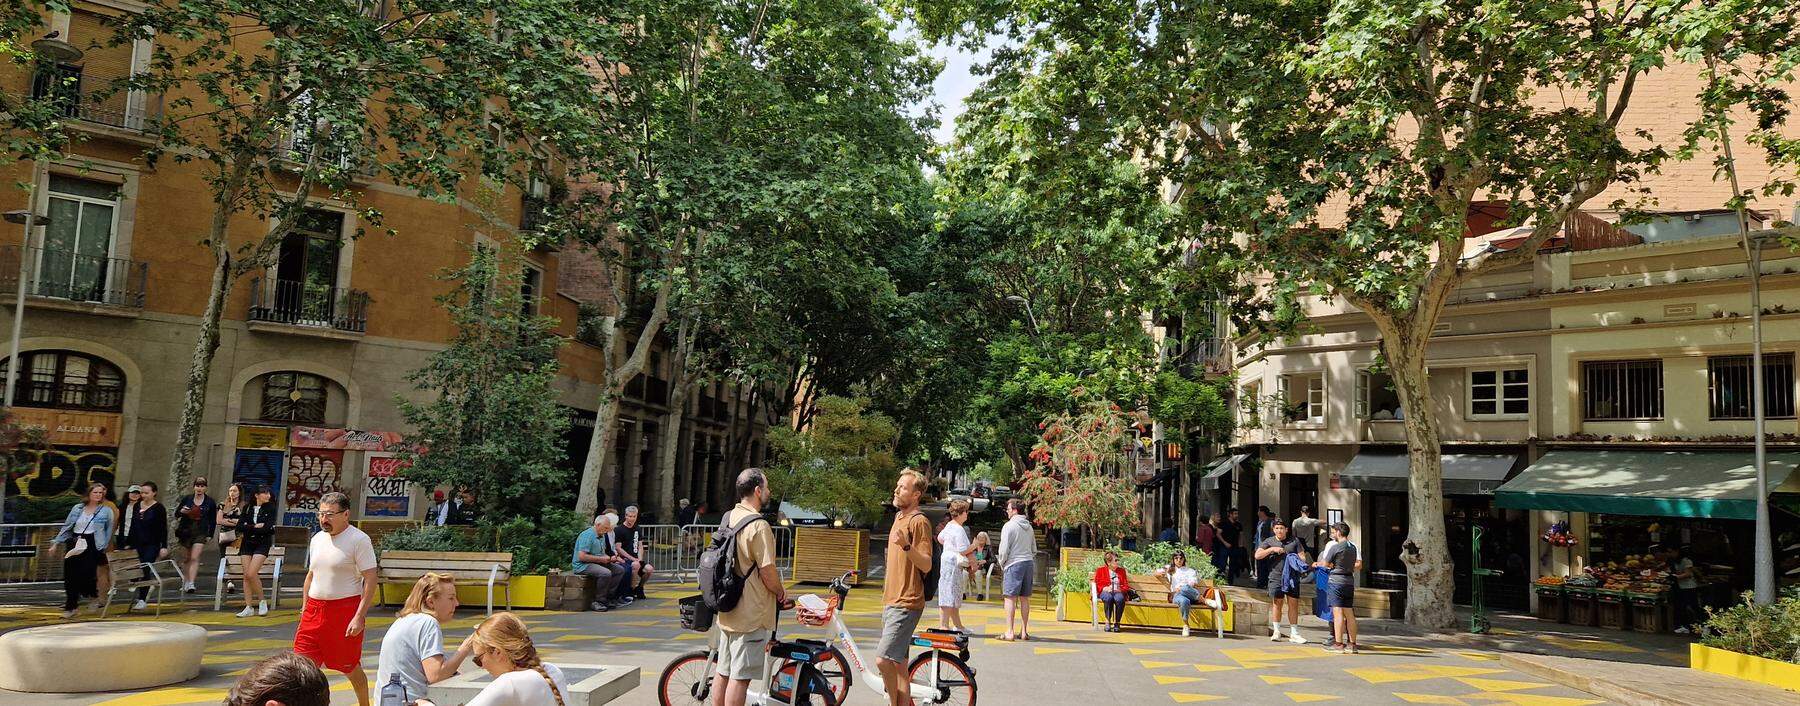 Straßen als grüne Aufenthaltsräume: der Superblock in Barcelonas Stadtteil Sant Antoni mit seinen markanten Bodenmarkierungen.